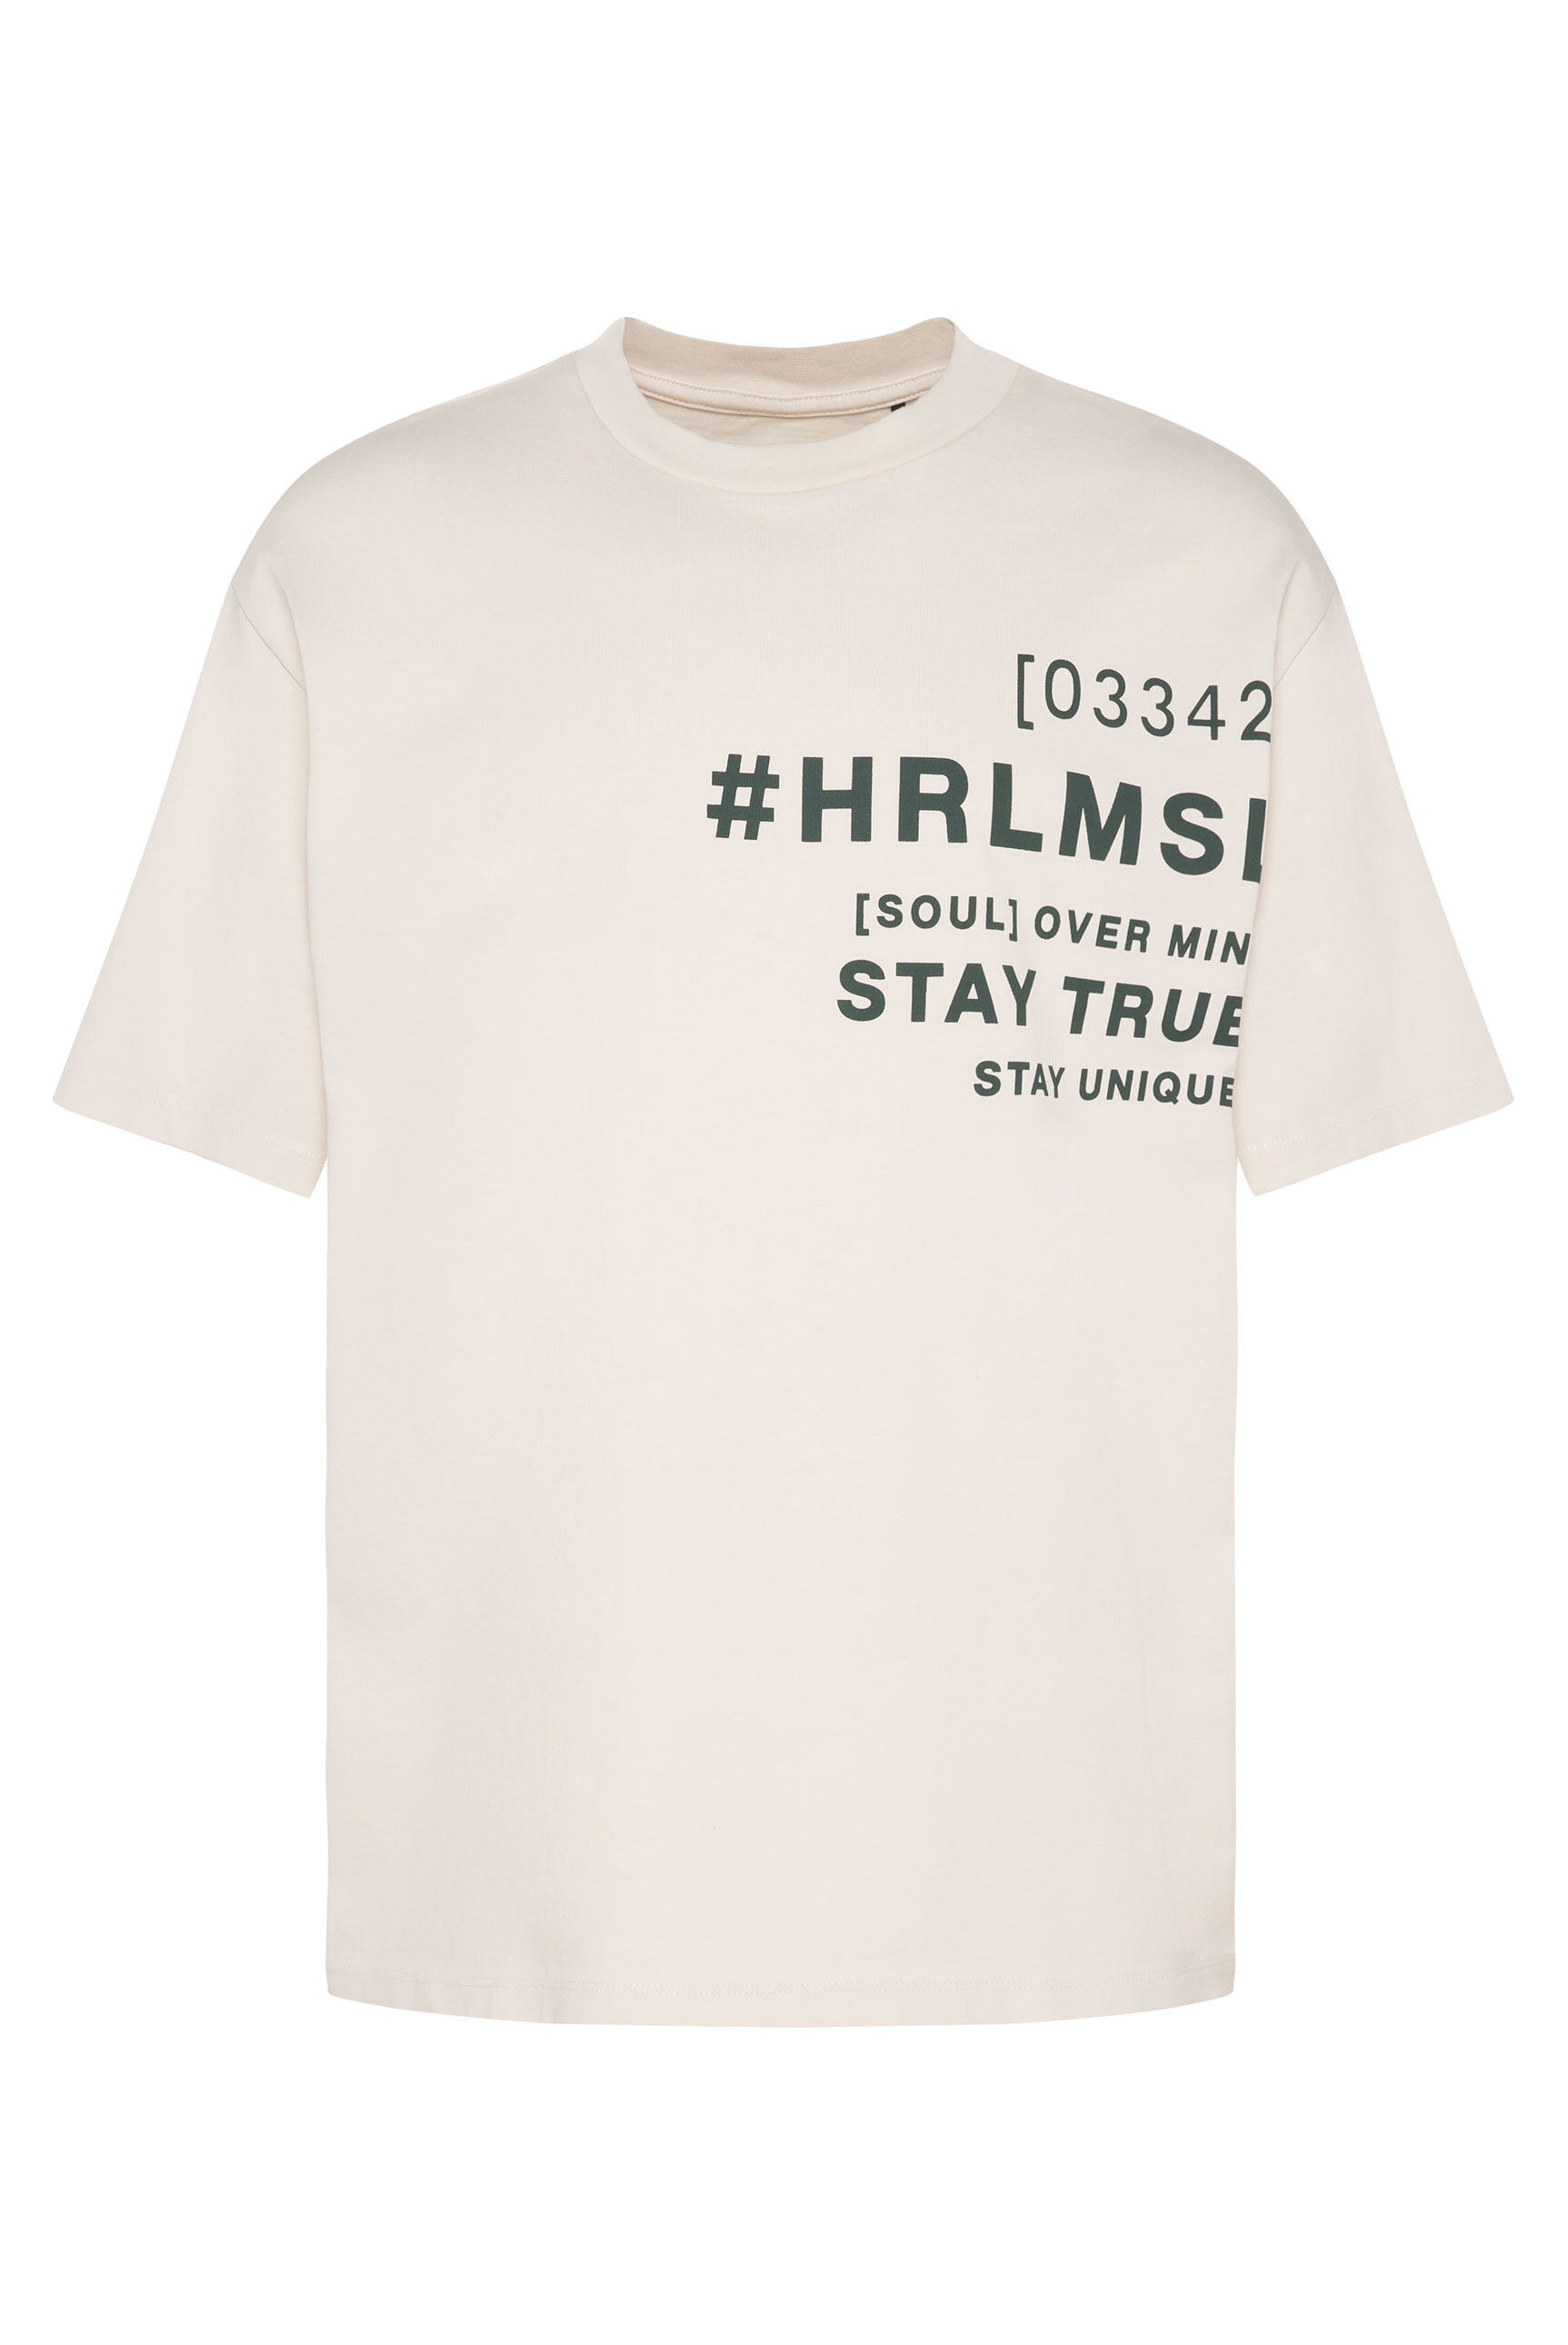 Harlem Soul Rundhalsshirt, mit Logodruck